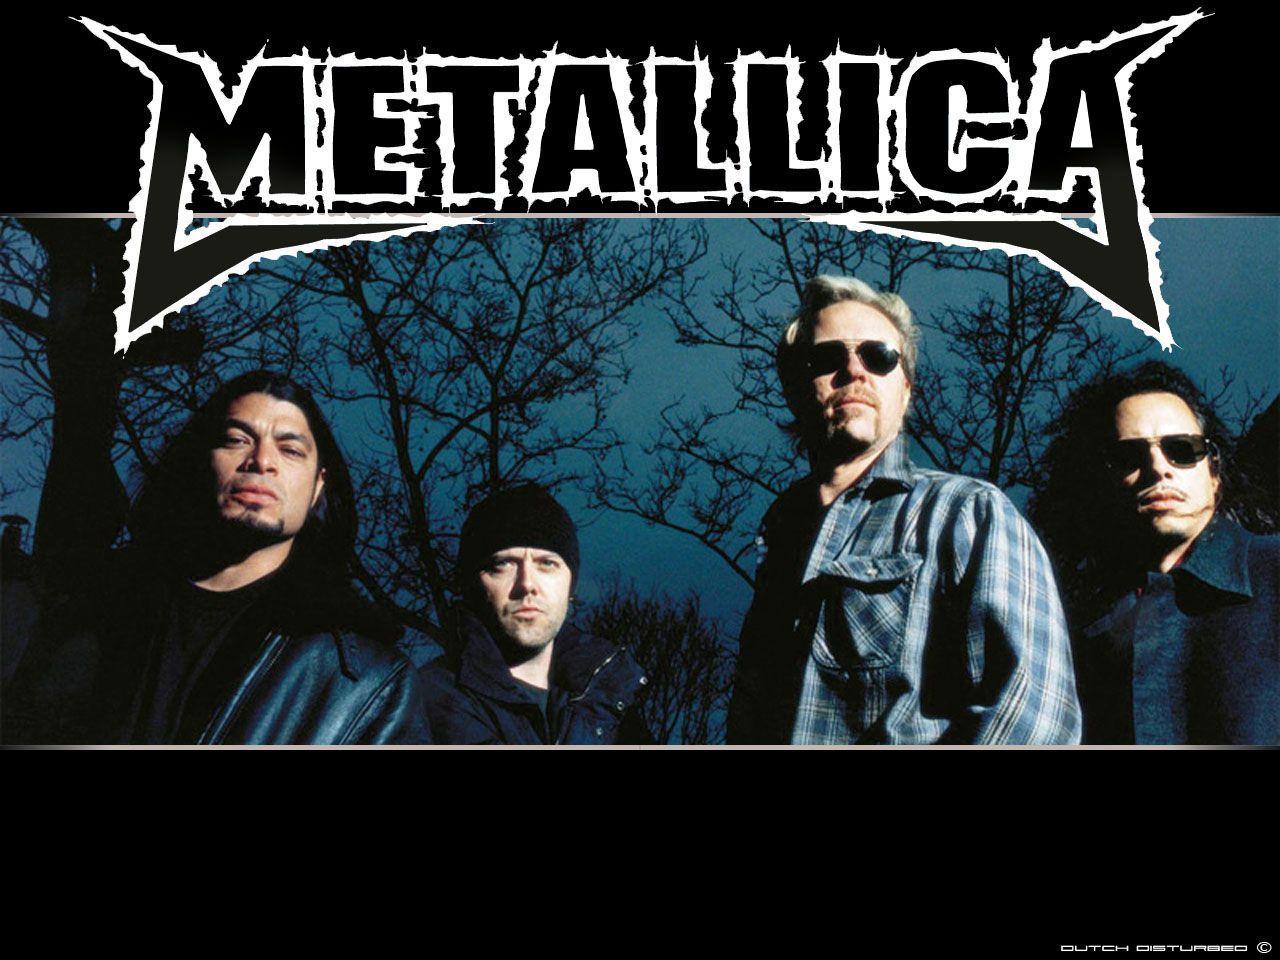 Metallica Wallpaper 67368 Best HD Wallpaper. Wallpaiper